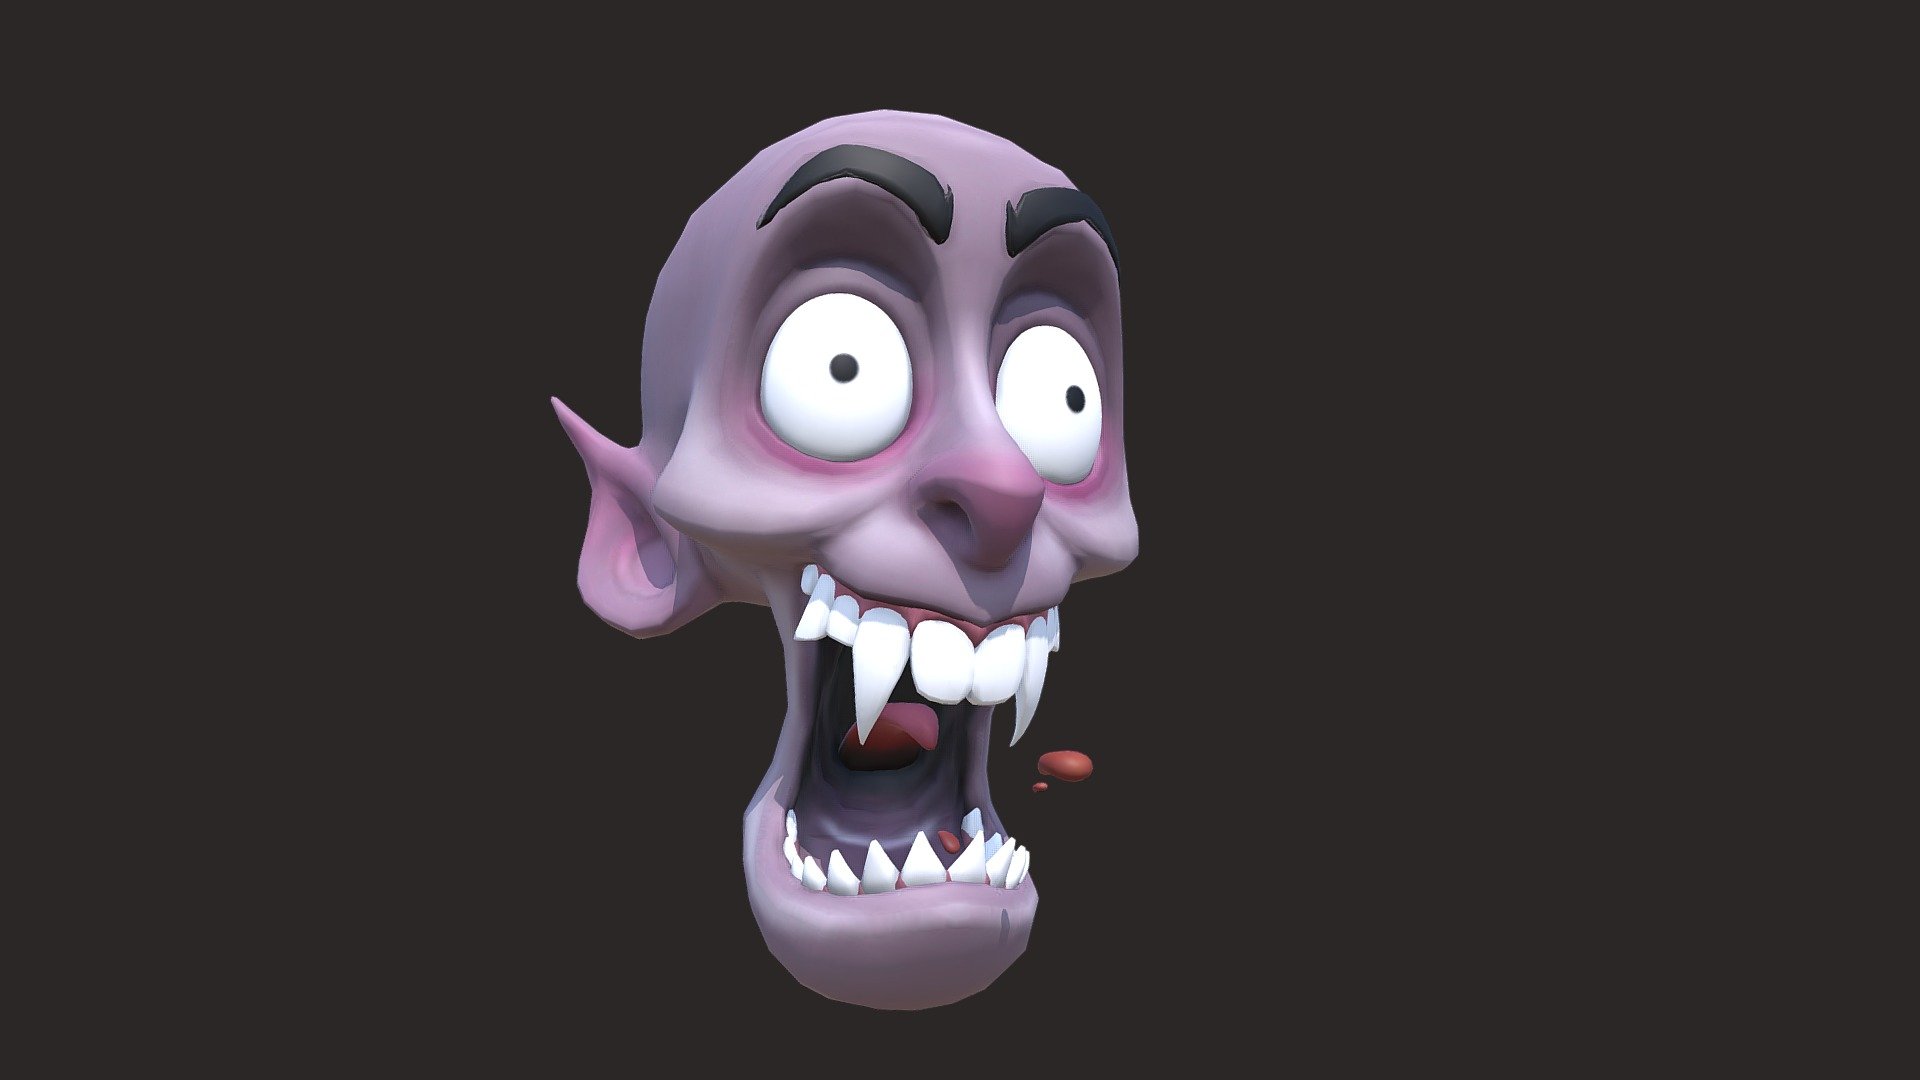 reference https://www.instagram.com/p/CoCtsiXIHe_/ - skull_Monstar - 3D model by snjvsngh_negi 3d model